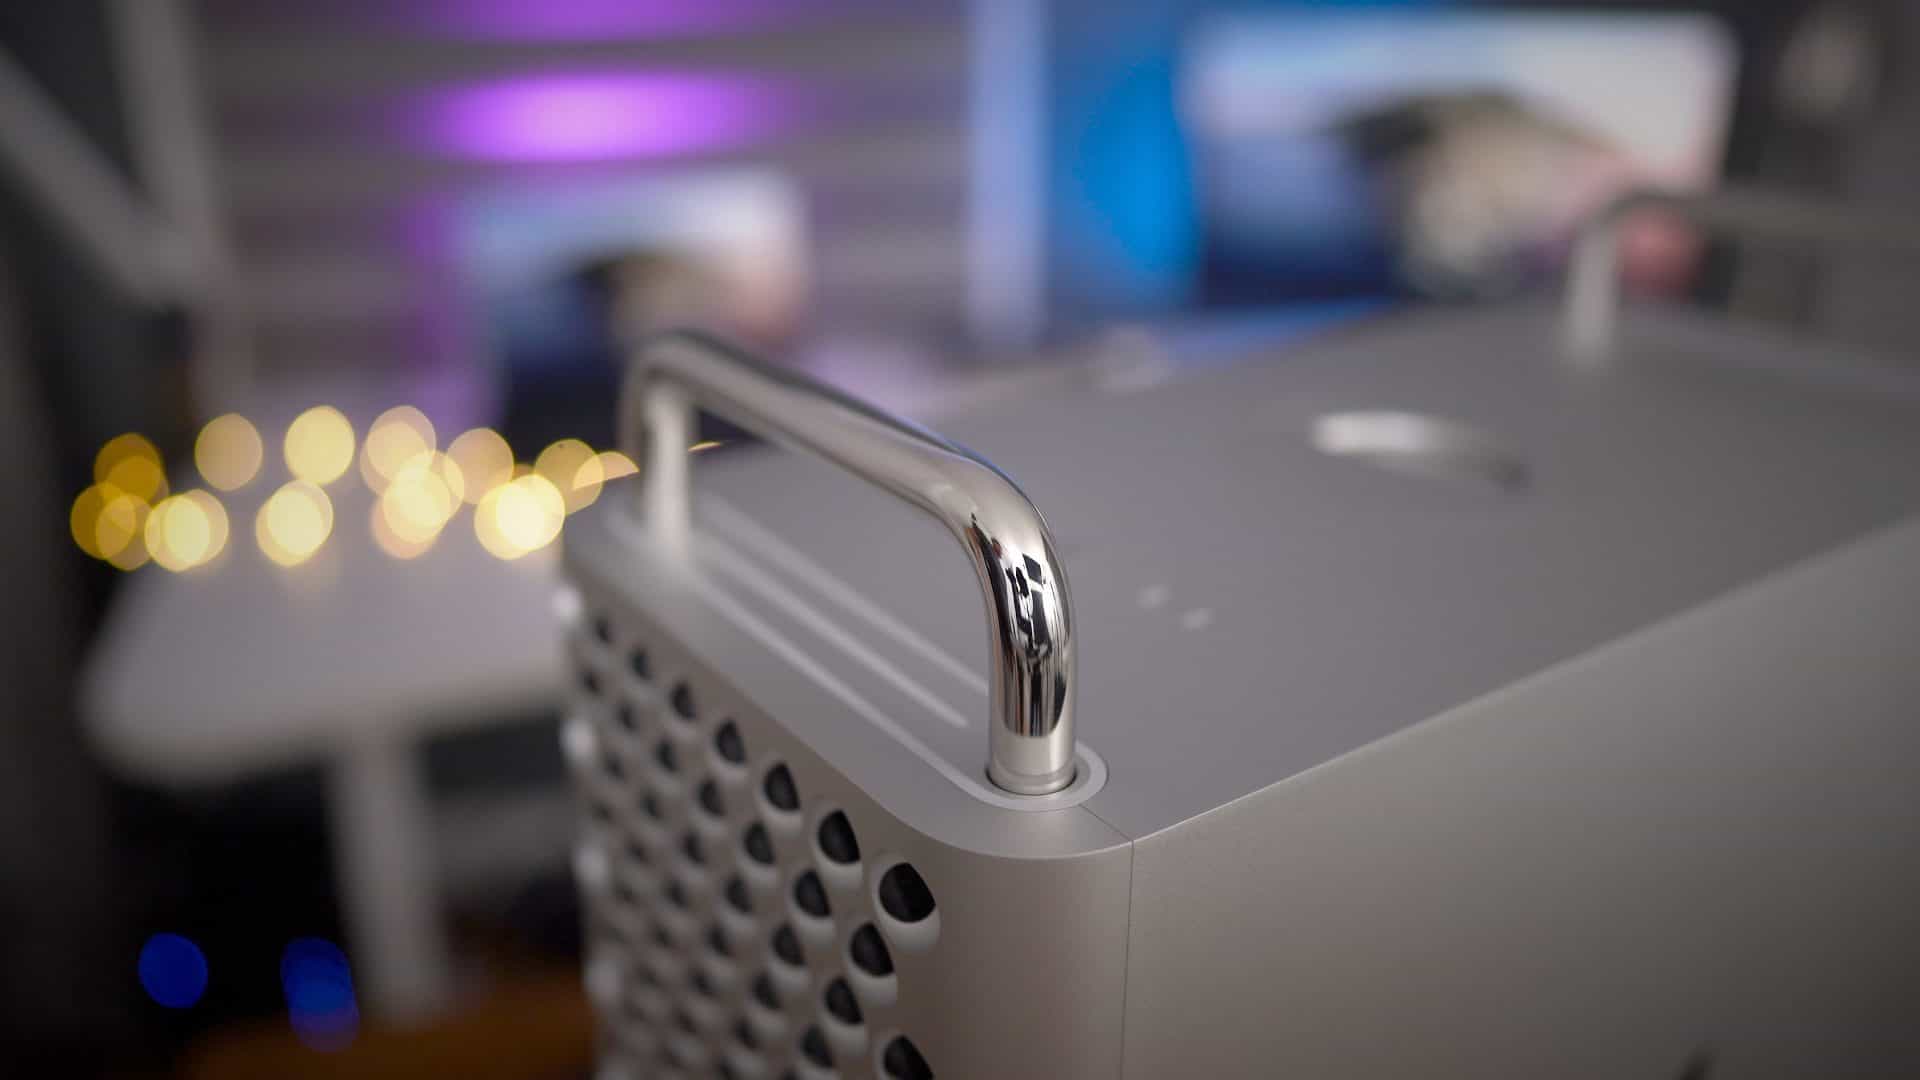 Mac Pro ställs mot nya MacBook Pro 16-tum - vilken dator vinner? - Magasin  MACKEN